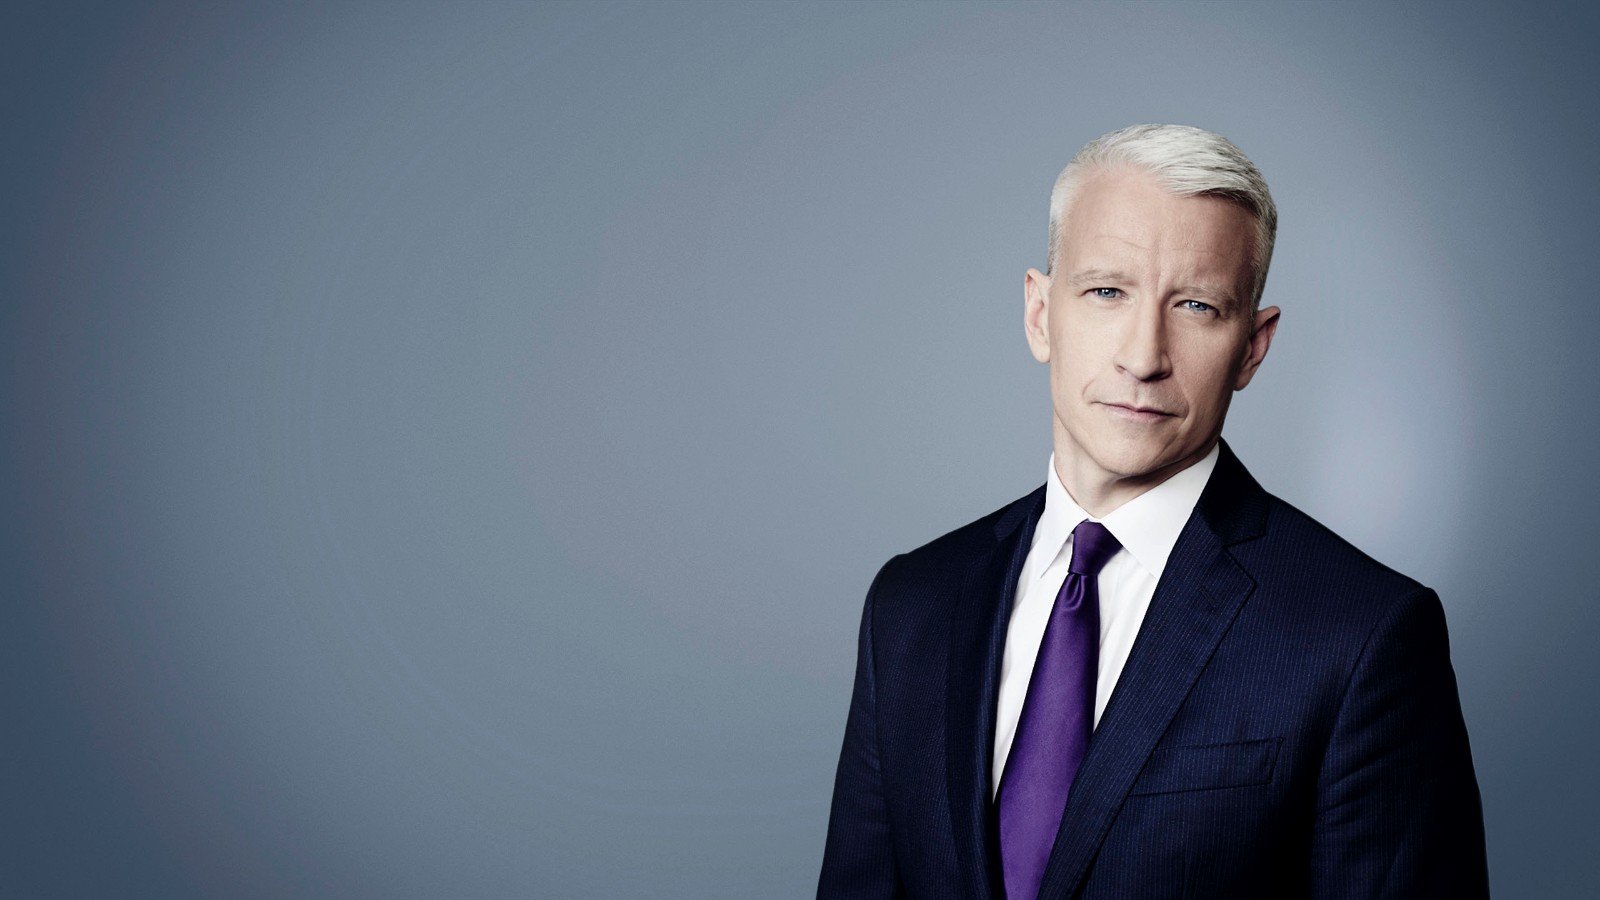 CNN Profiles - Anderson Cooper - CNN anchor - CNN